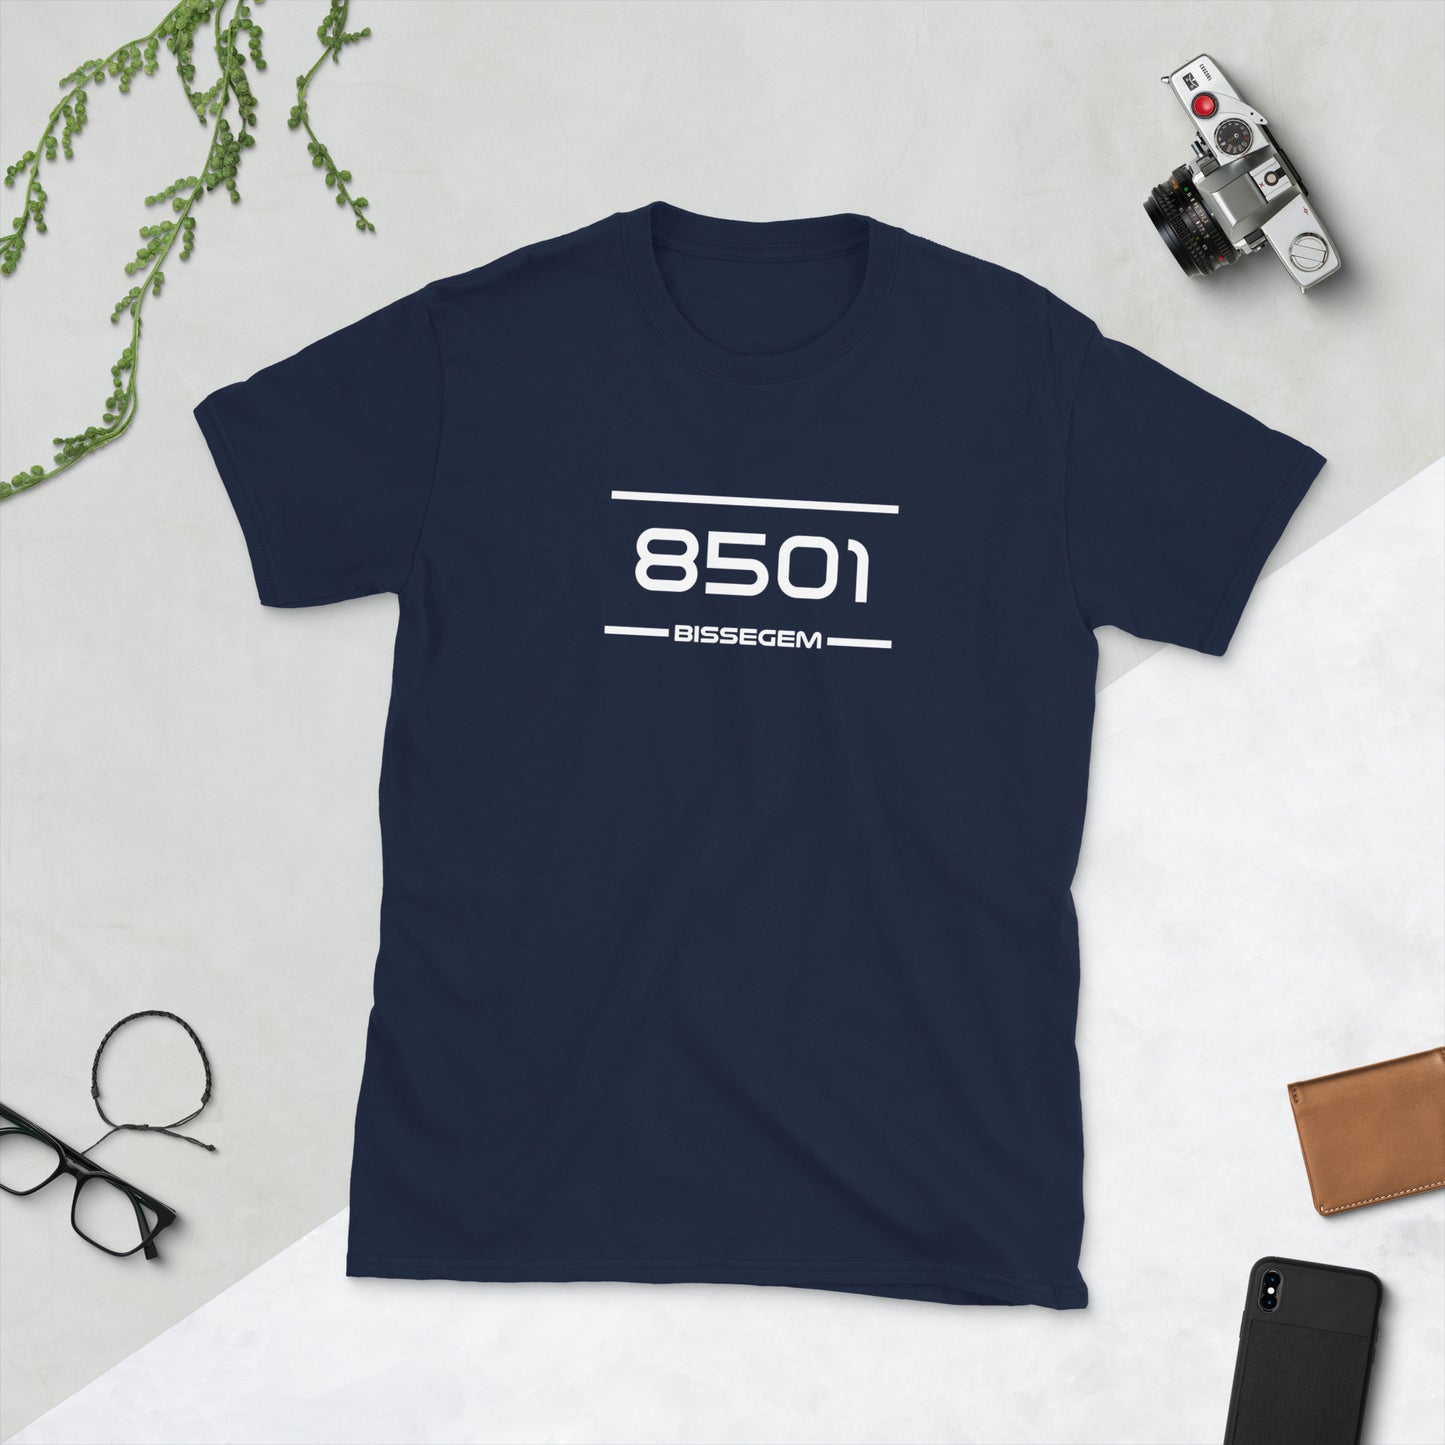 Tshirt - 8501 - Bissegem